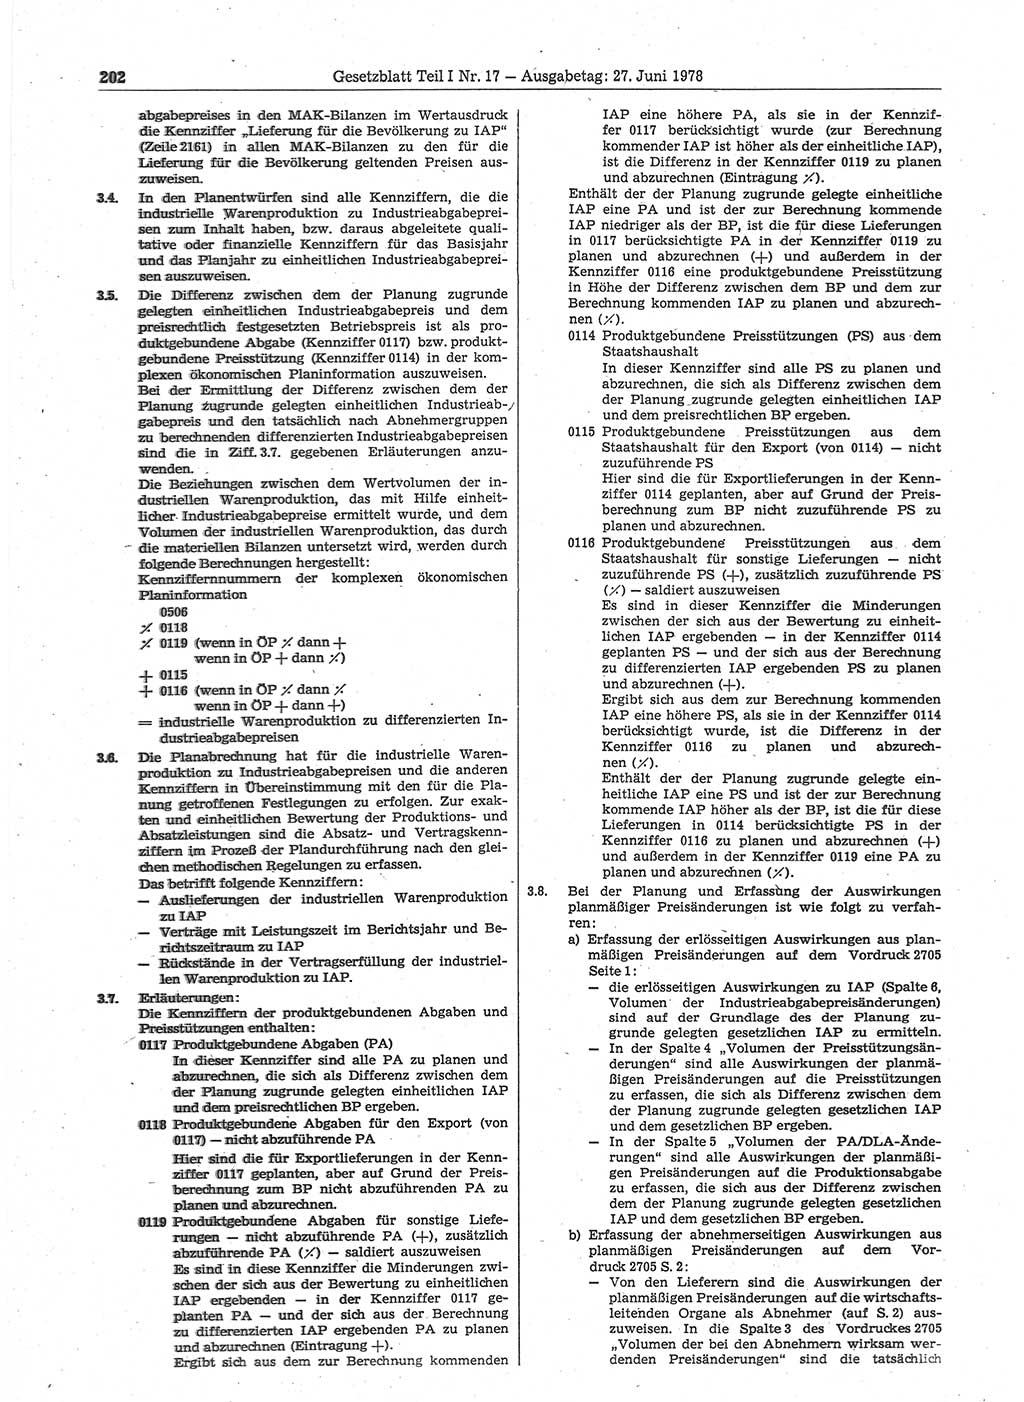 Gesetzblatt (GBl.) der Deutschen Demokratischen Republik (DDR) Teil Ⅰ 1978, Seite 202 (GBl. DDR Ⅰ 1978, S. 202)